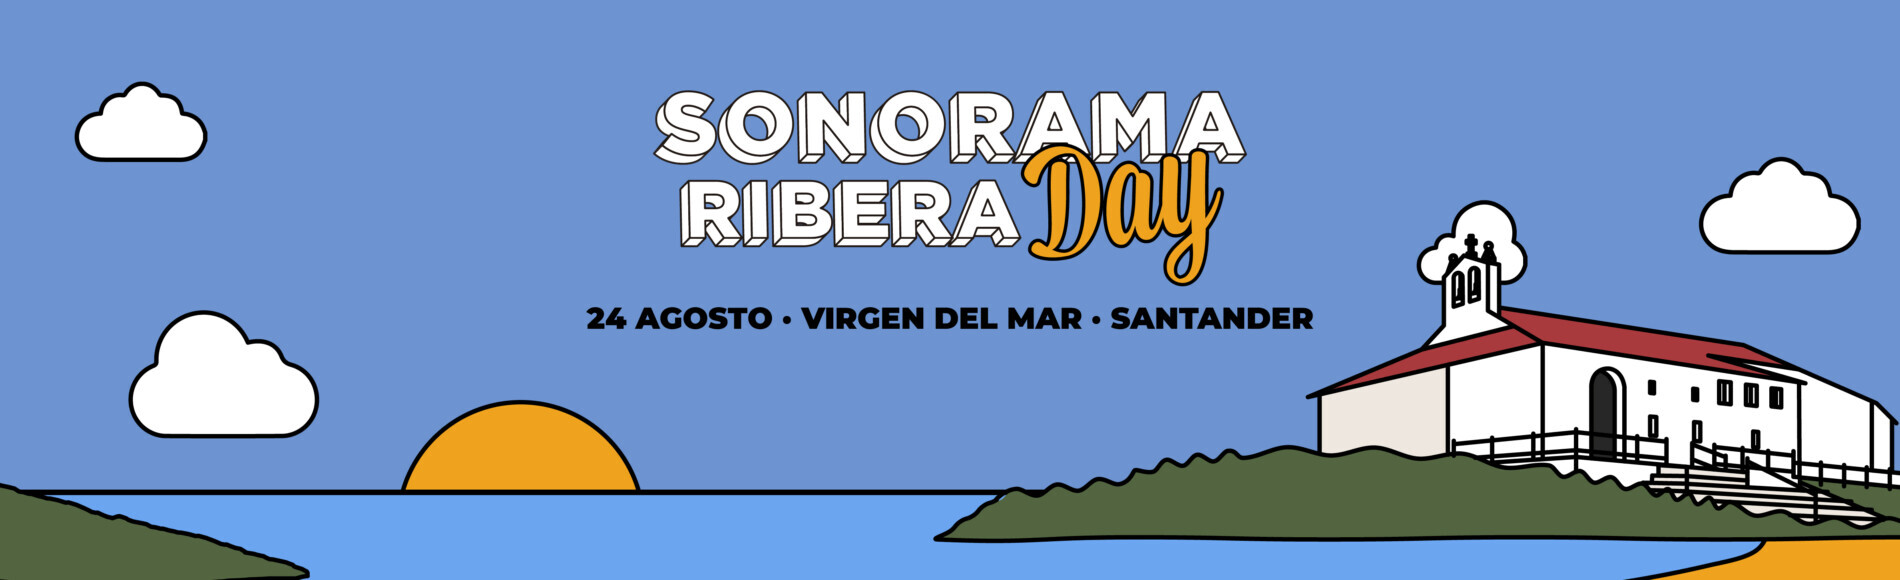 Festival Sonorama Ribera Day en la Virgen del Mar en Santander